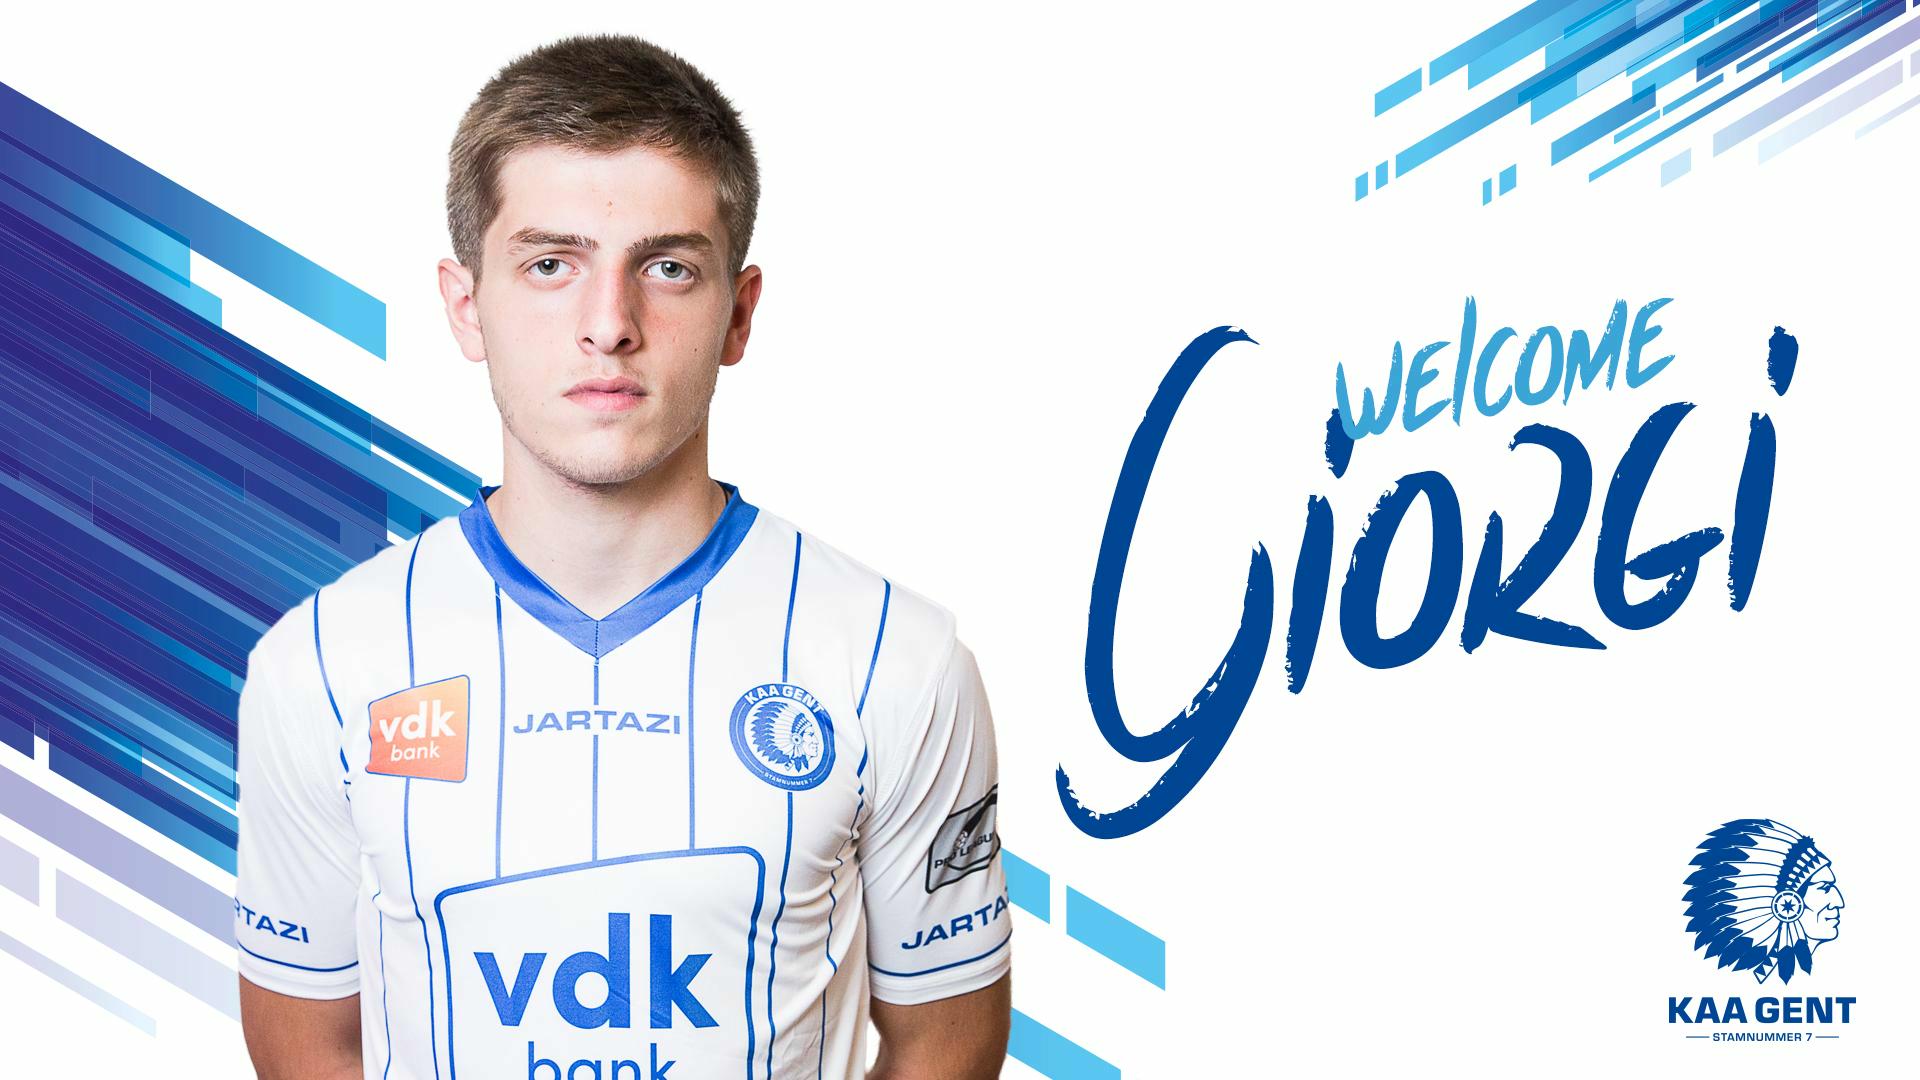 Welcome Giorgi!